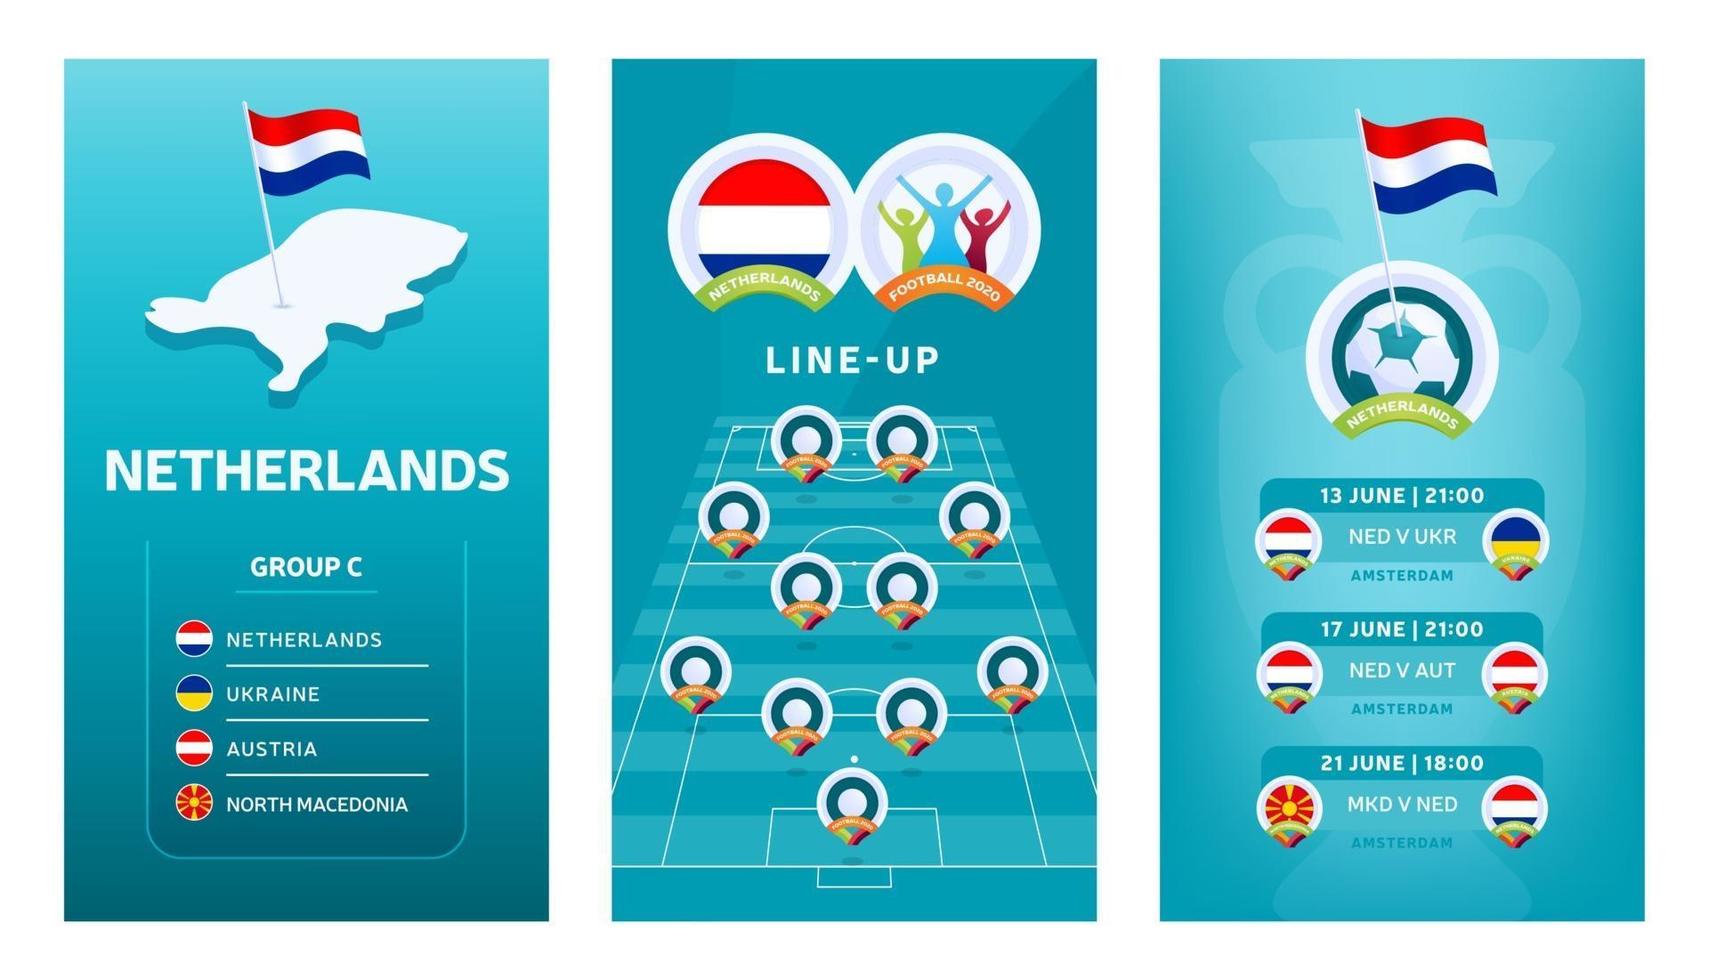 europese 2020 voetbal verticale banner set voor sociale media. nederland groep c banner met isometrische kaart, speldvlag, wedstrijdschema en opstelling op voetbalveld vector